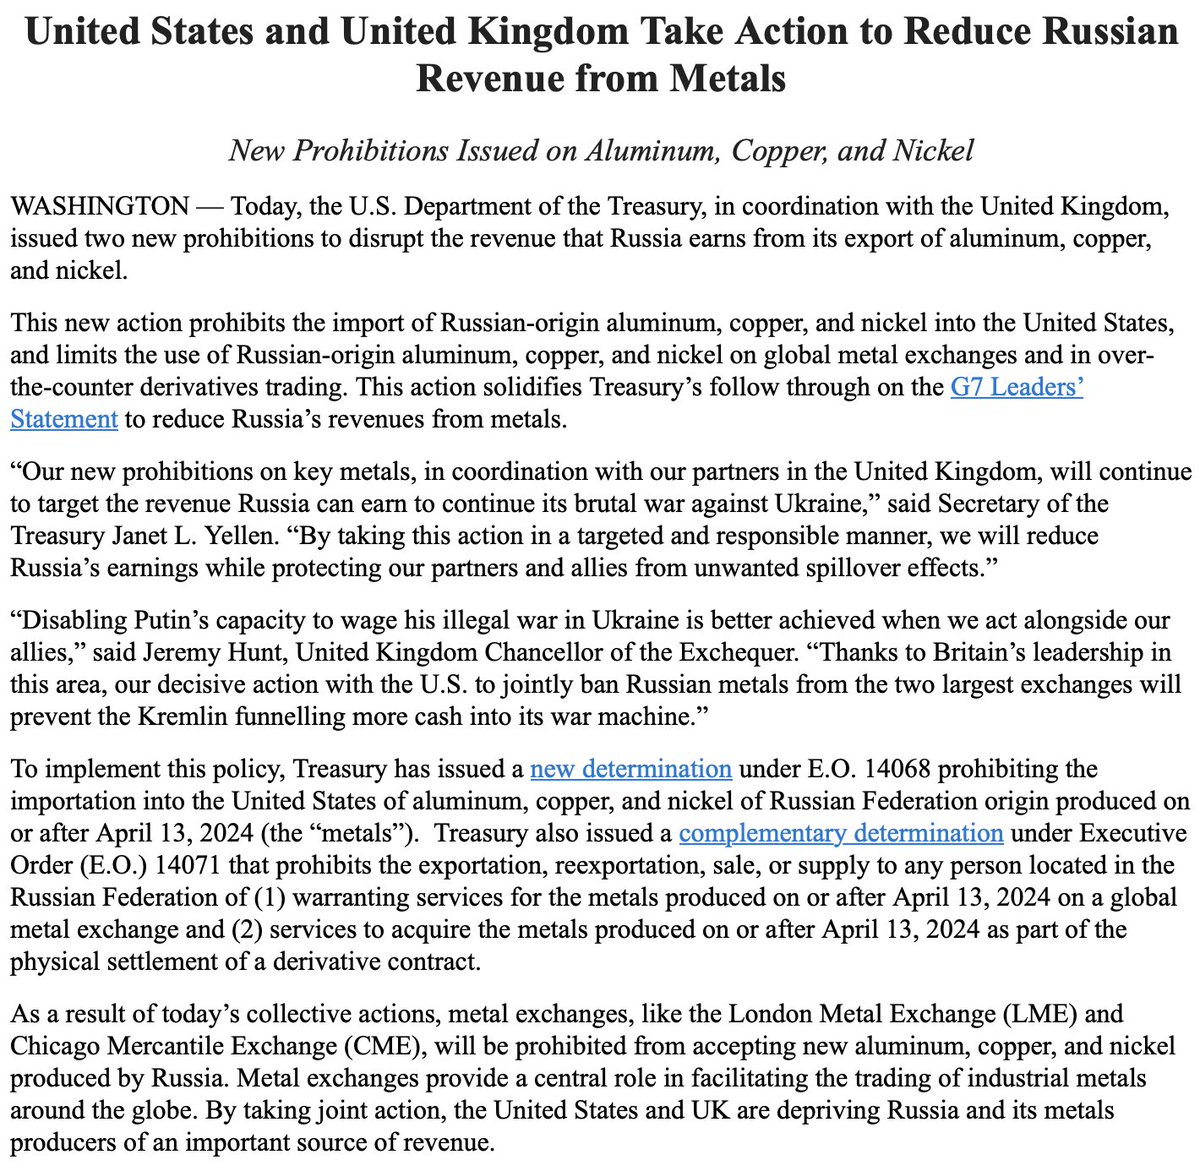 قامت الولايات المتحدة وبريطانيا بتقييد صادرات المعادن الروسية، - وزارة الخزانة الأمريكية، المسؤولون البريطانيون يصدرون حظرًا جديدًا على الألومنيوم والنحاس والنيكل من أصل روسي